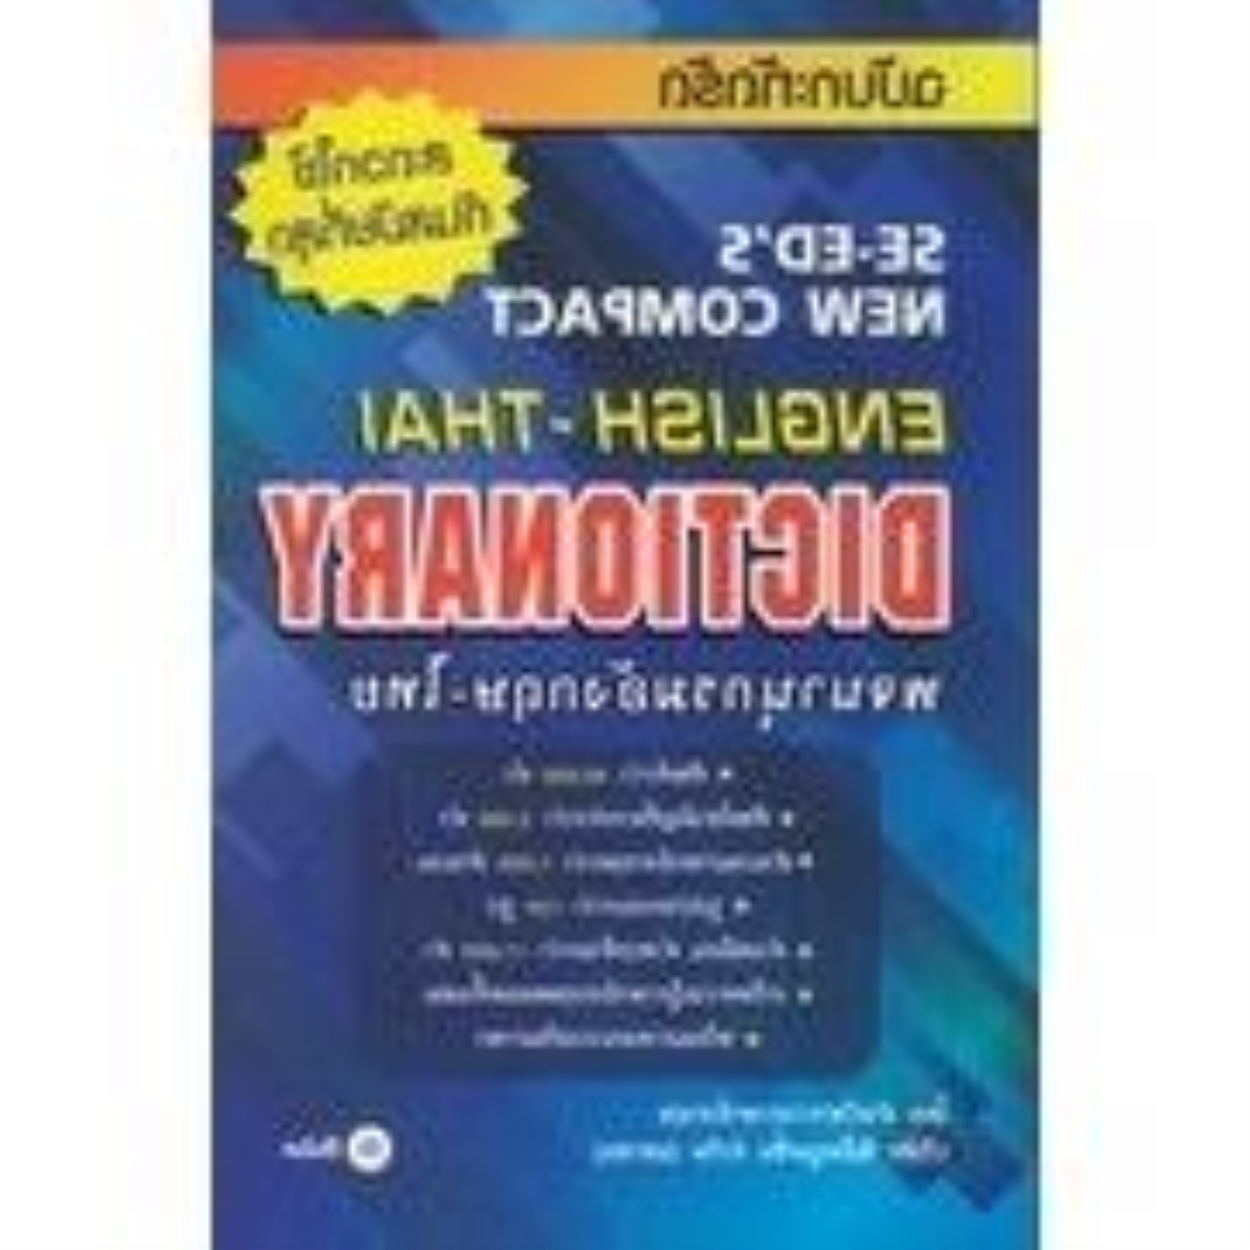 Seed (ซีเอ็ด) พจนานุกรมอังกฤษไทย ฉบับกะทััด (99 บาท)